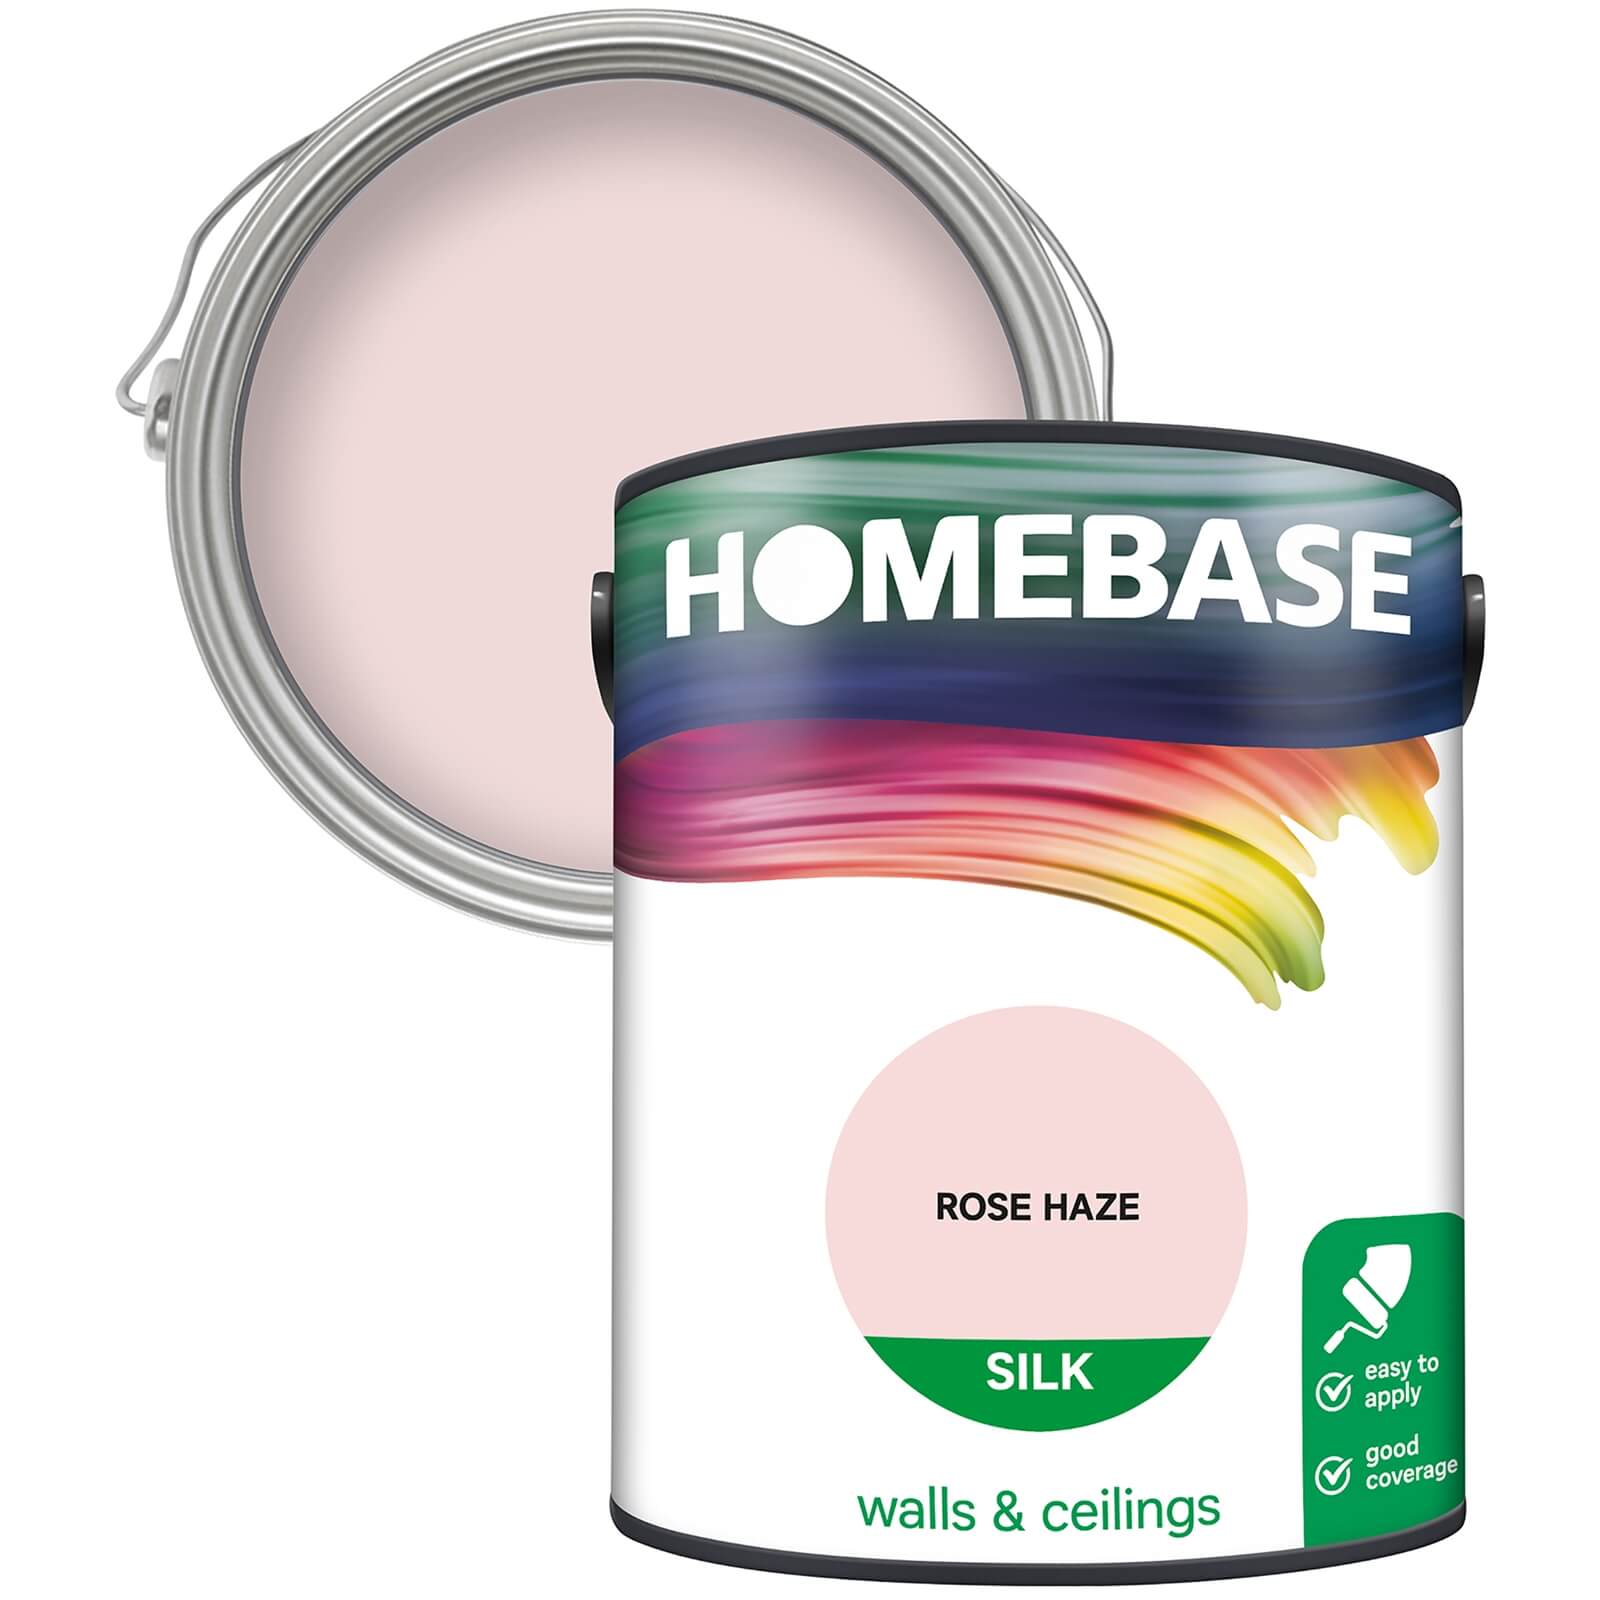 Homebase Silk Emulsion Paint Rose Haze - 5L